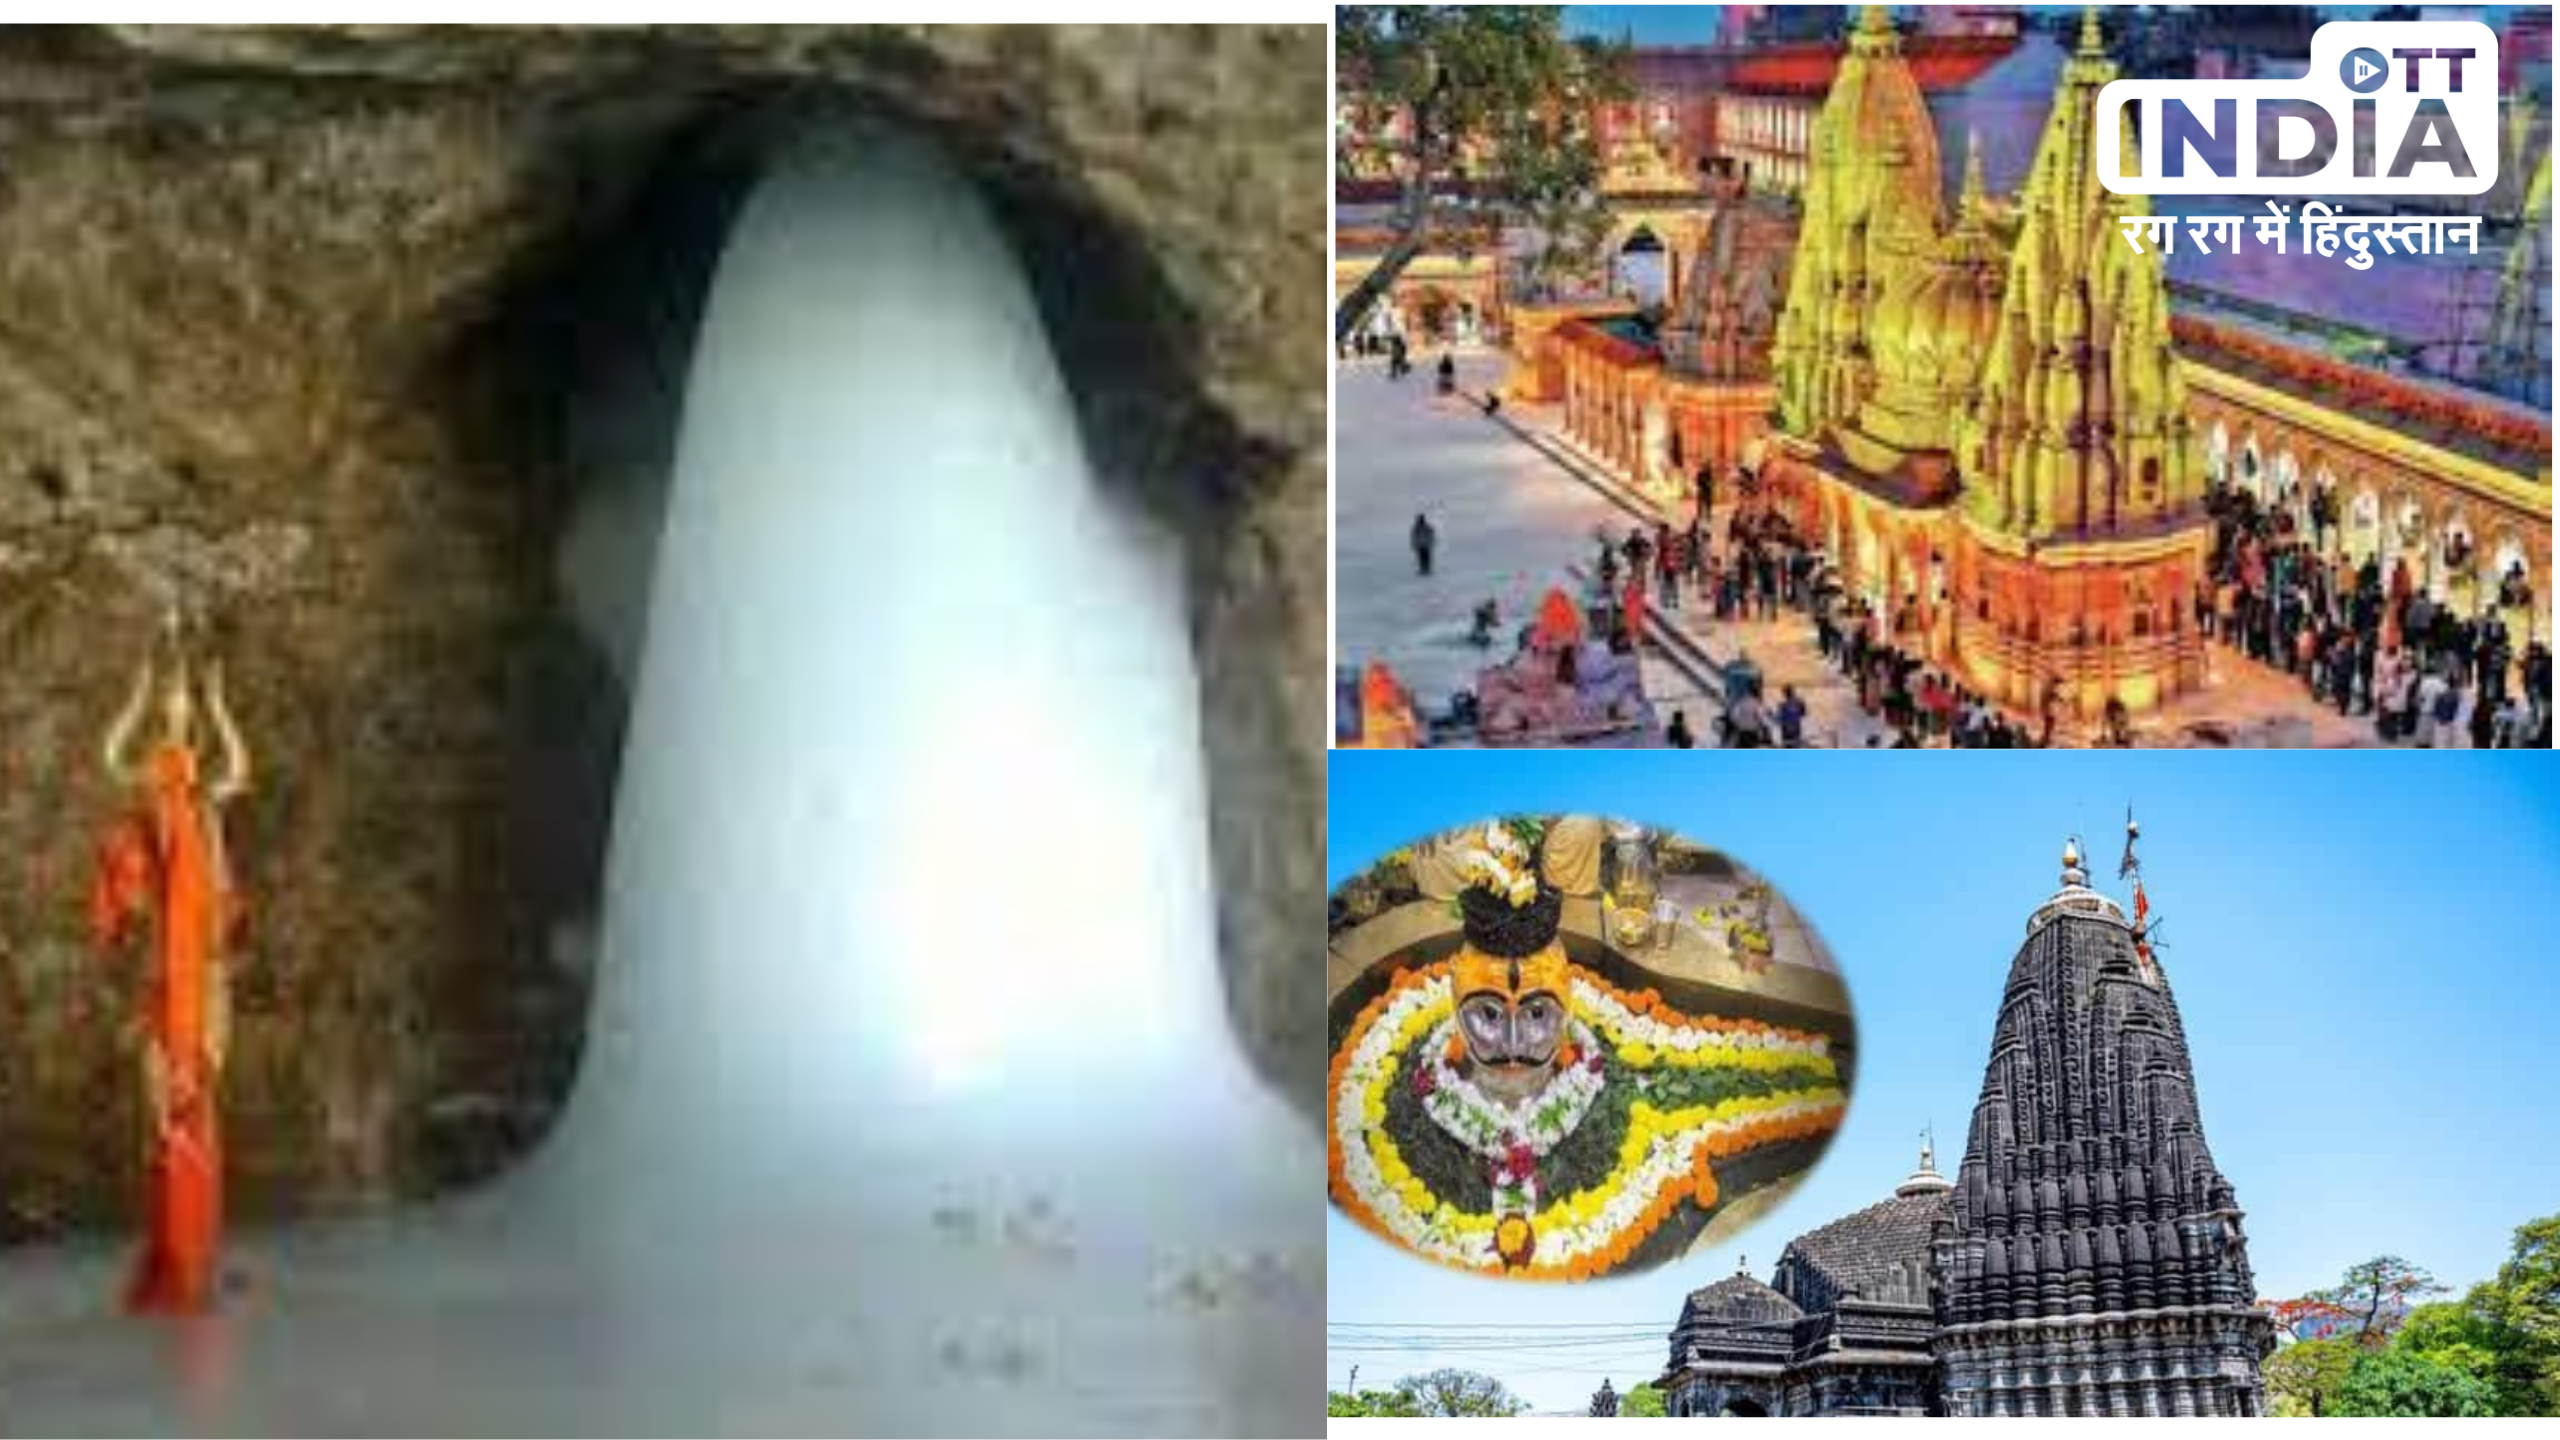 Famous Shiva Temple In India: अगर शिव भक्ति से हैं ओत- प्रोत तो इन 10 जगहों का दर्शन जरूर करें , होगी भोलेनाथ की कृपा